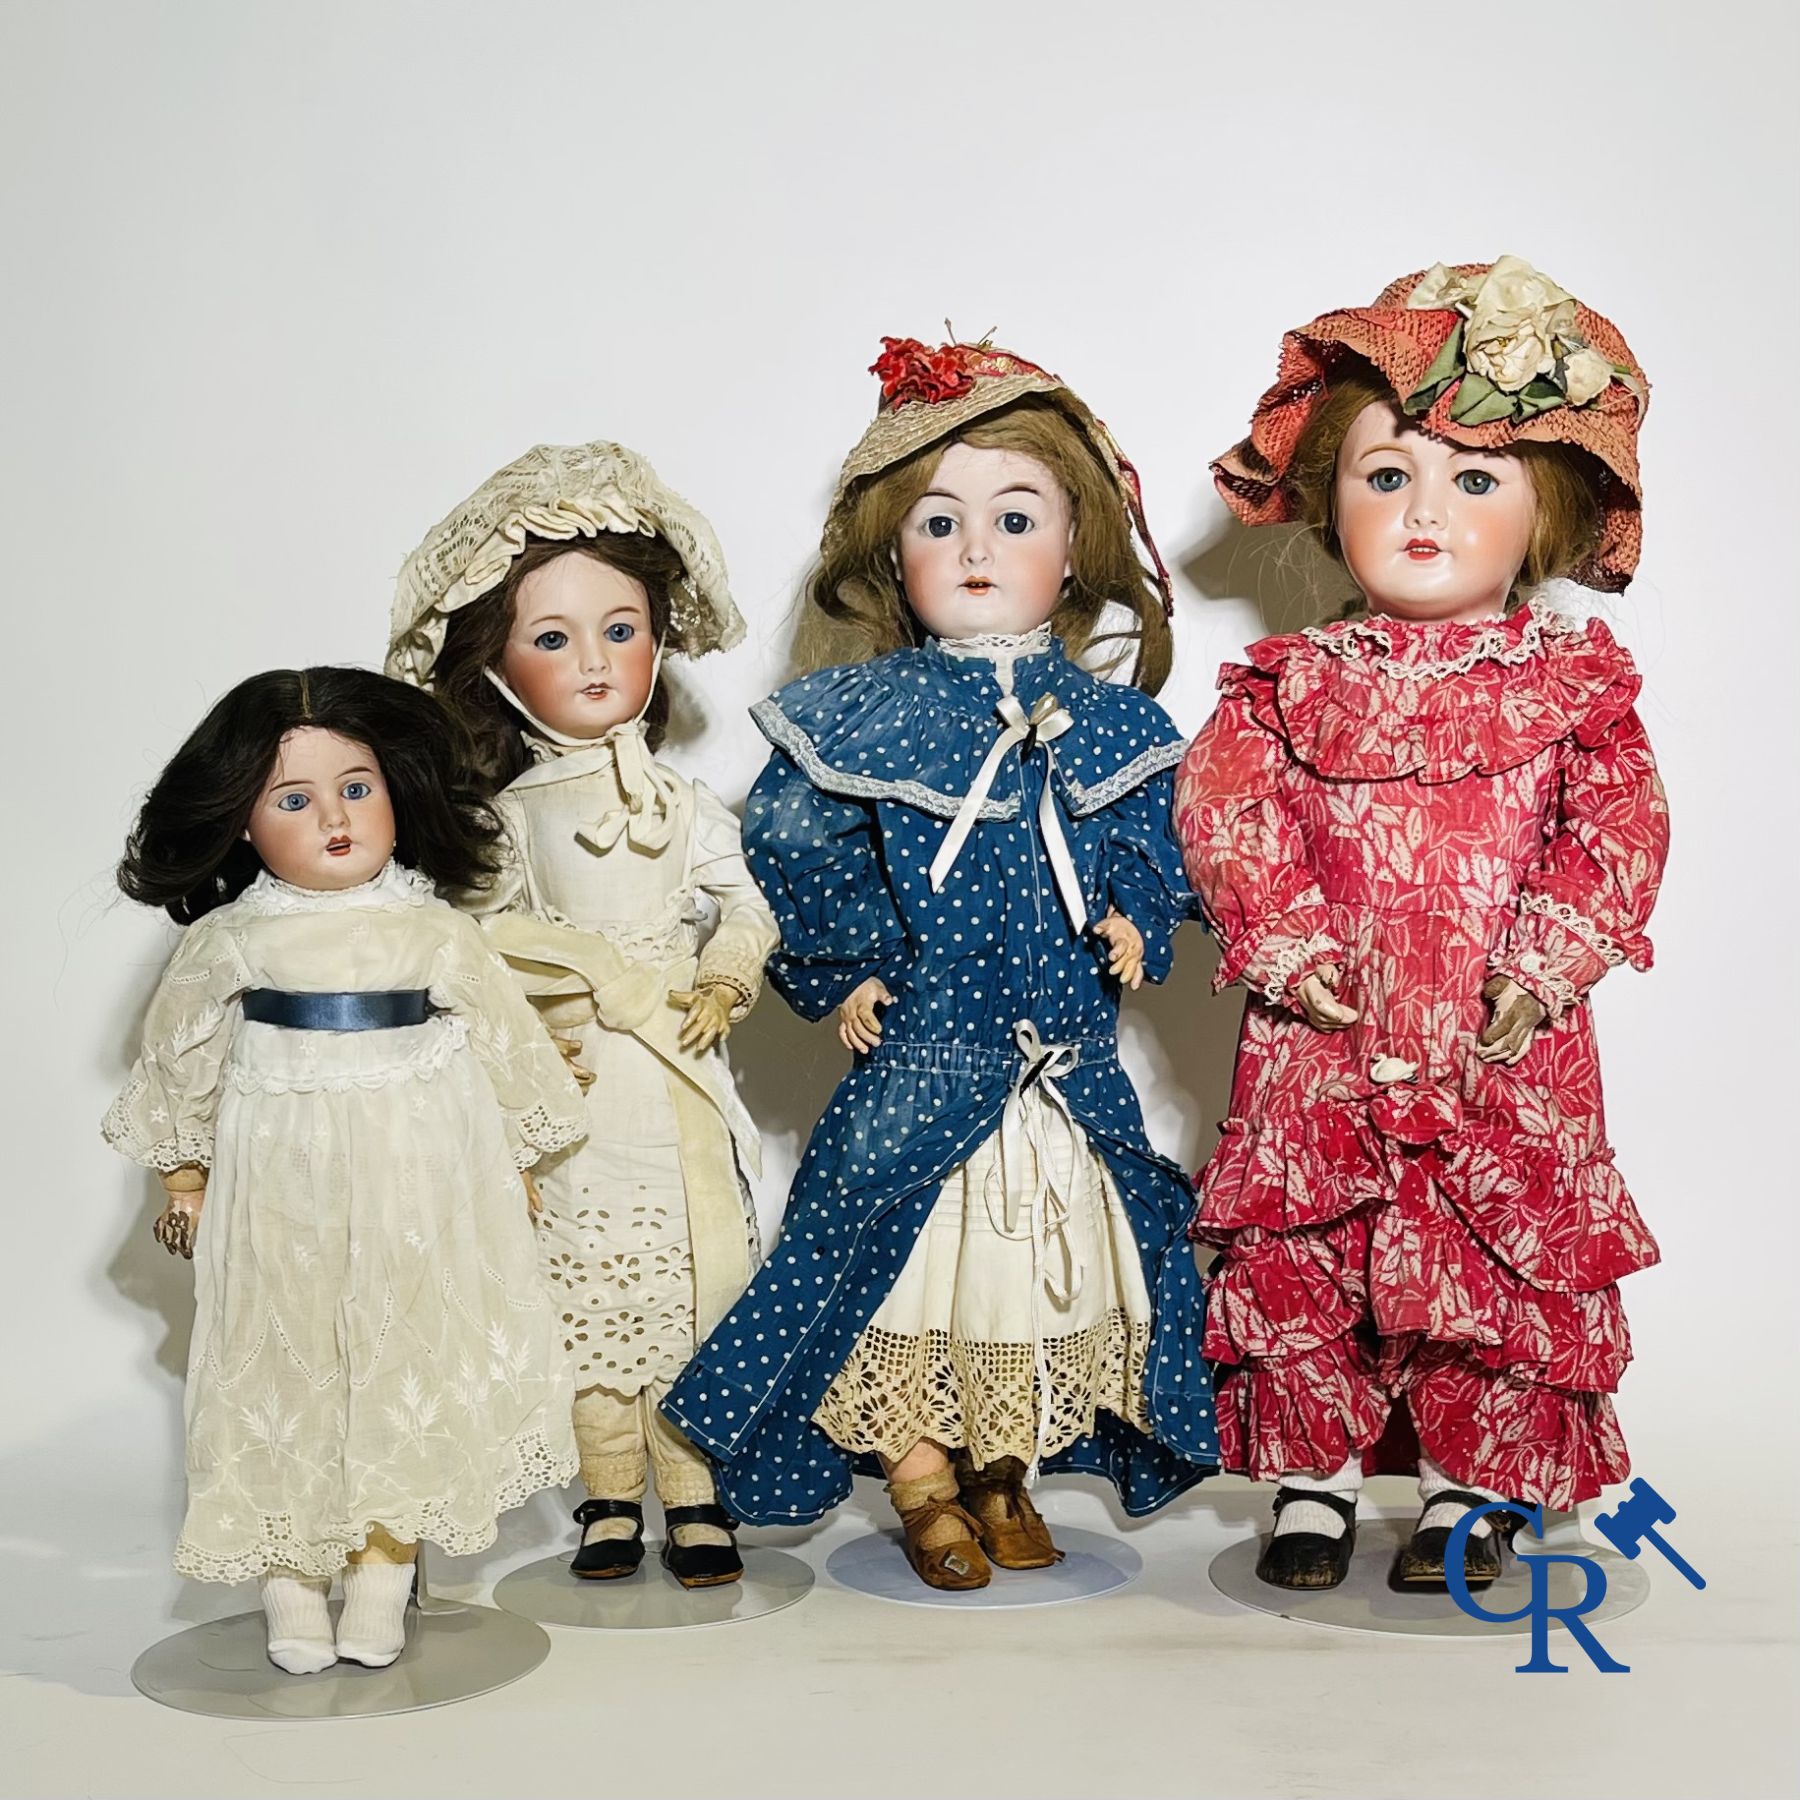 Toys: antique dolls: 4 antique dolls with porcelain head.